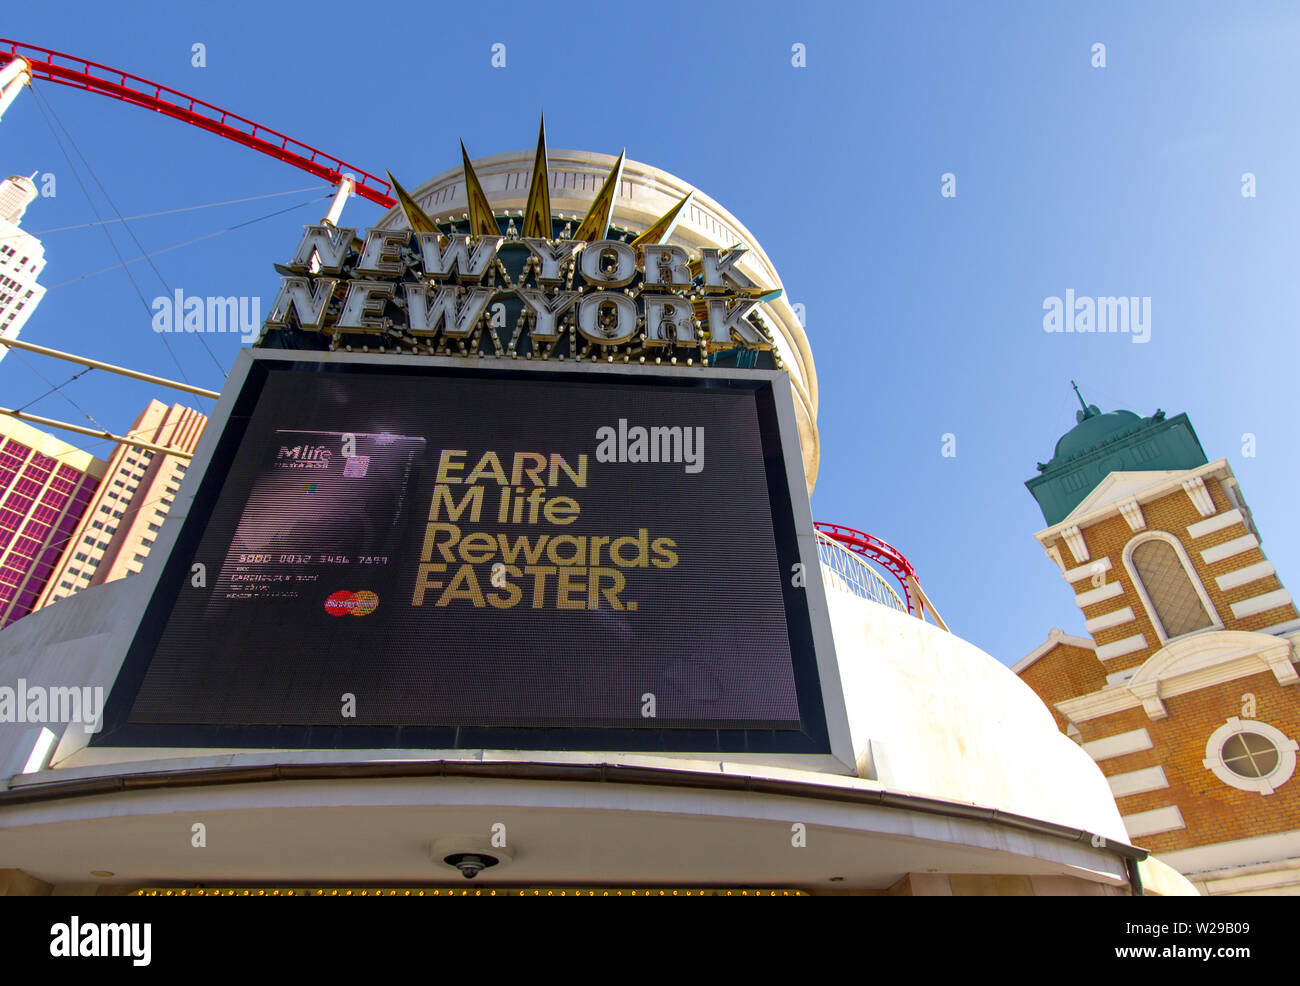 Las Vegas, Nevada, Stati Uniti d'America - 6 Maggio 2019: Esterno del New York New York casino e resort con un rettangolo di selezione per la pubblicità delle M vita programma Rewards. Foto Stock